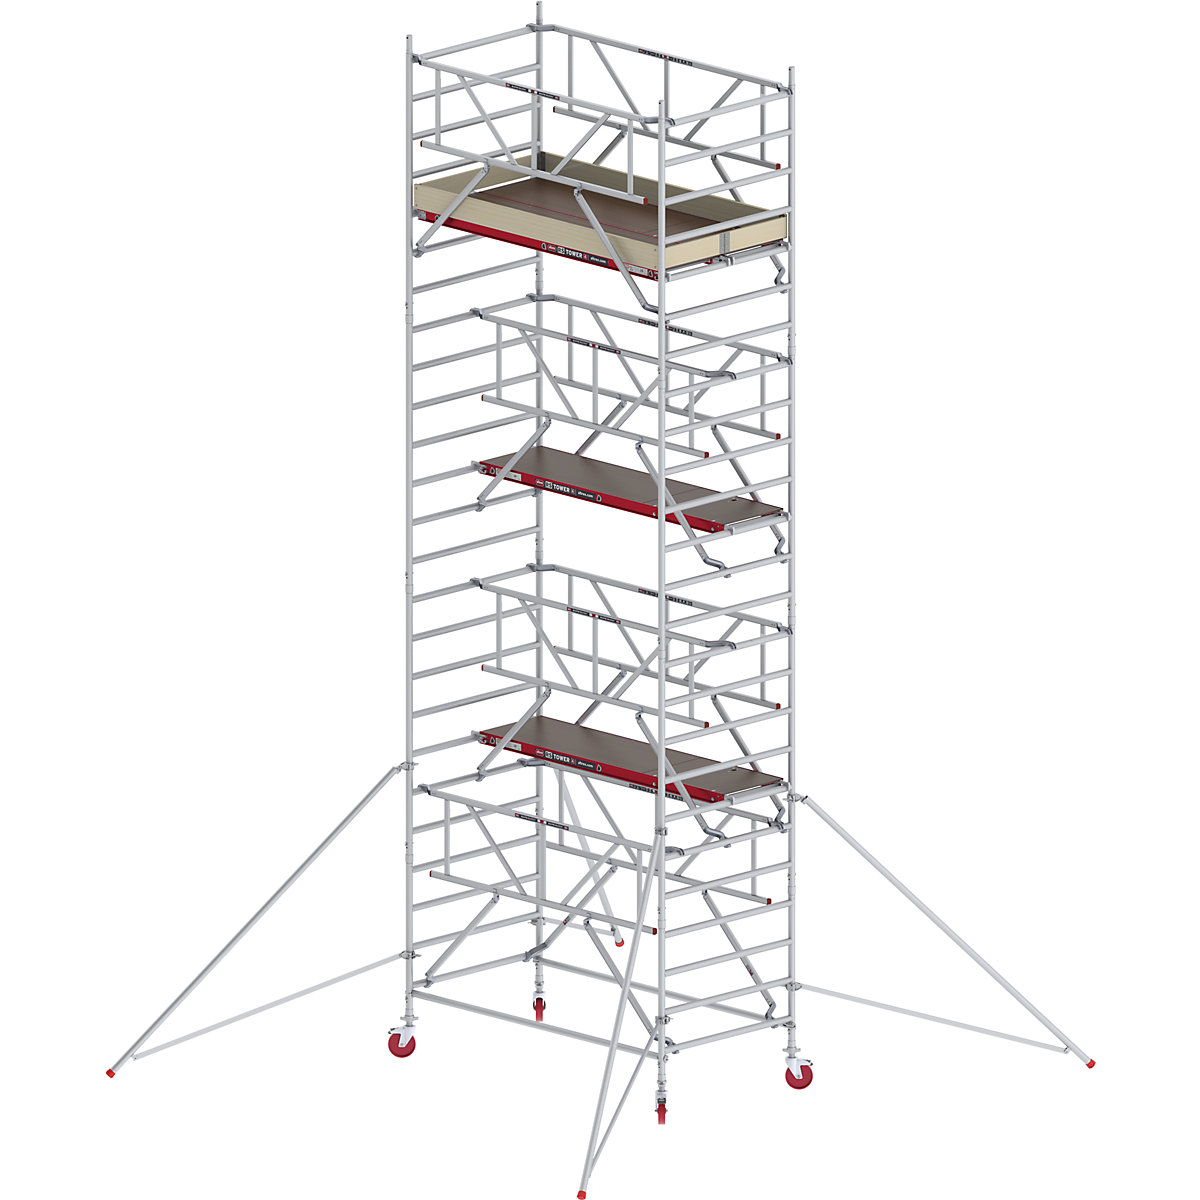 Rusztowanie ruchome RS TOWER 42, szerokie, z poręczą Safe-Quick® – Altrex, platforma drewniana, dł. 2,45 m, wys. robocza 8,20 m-2